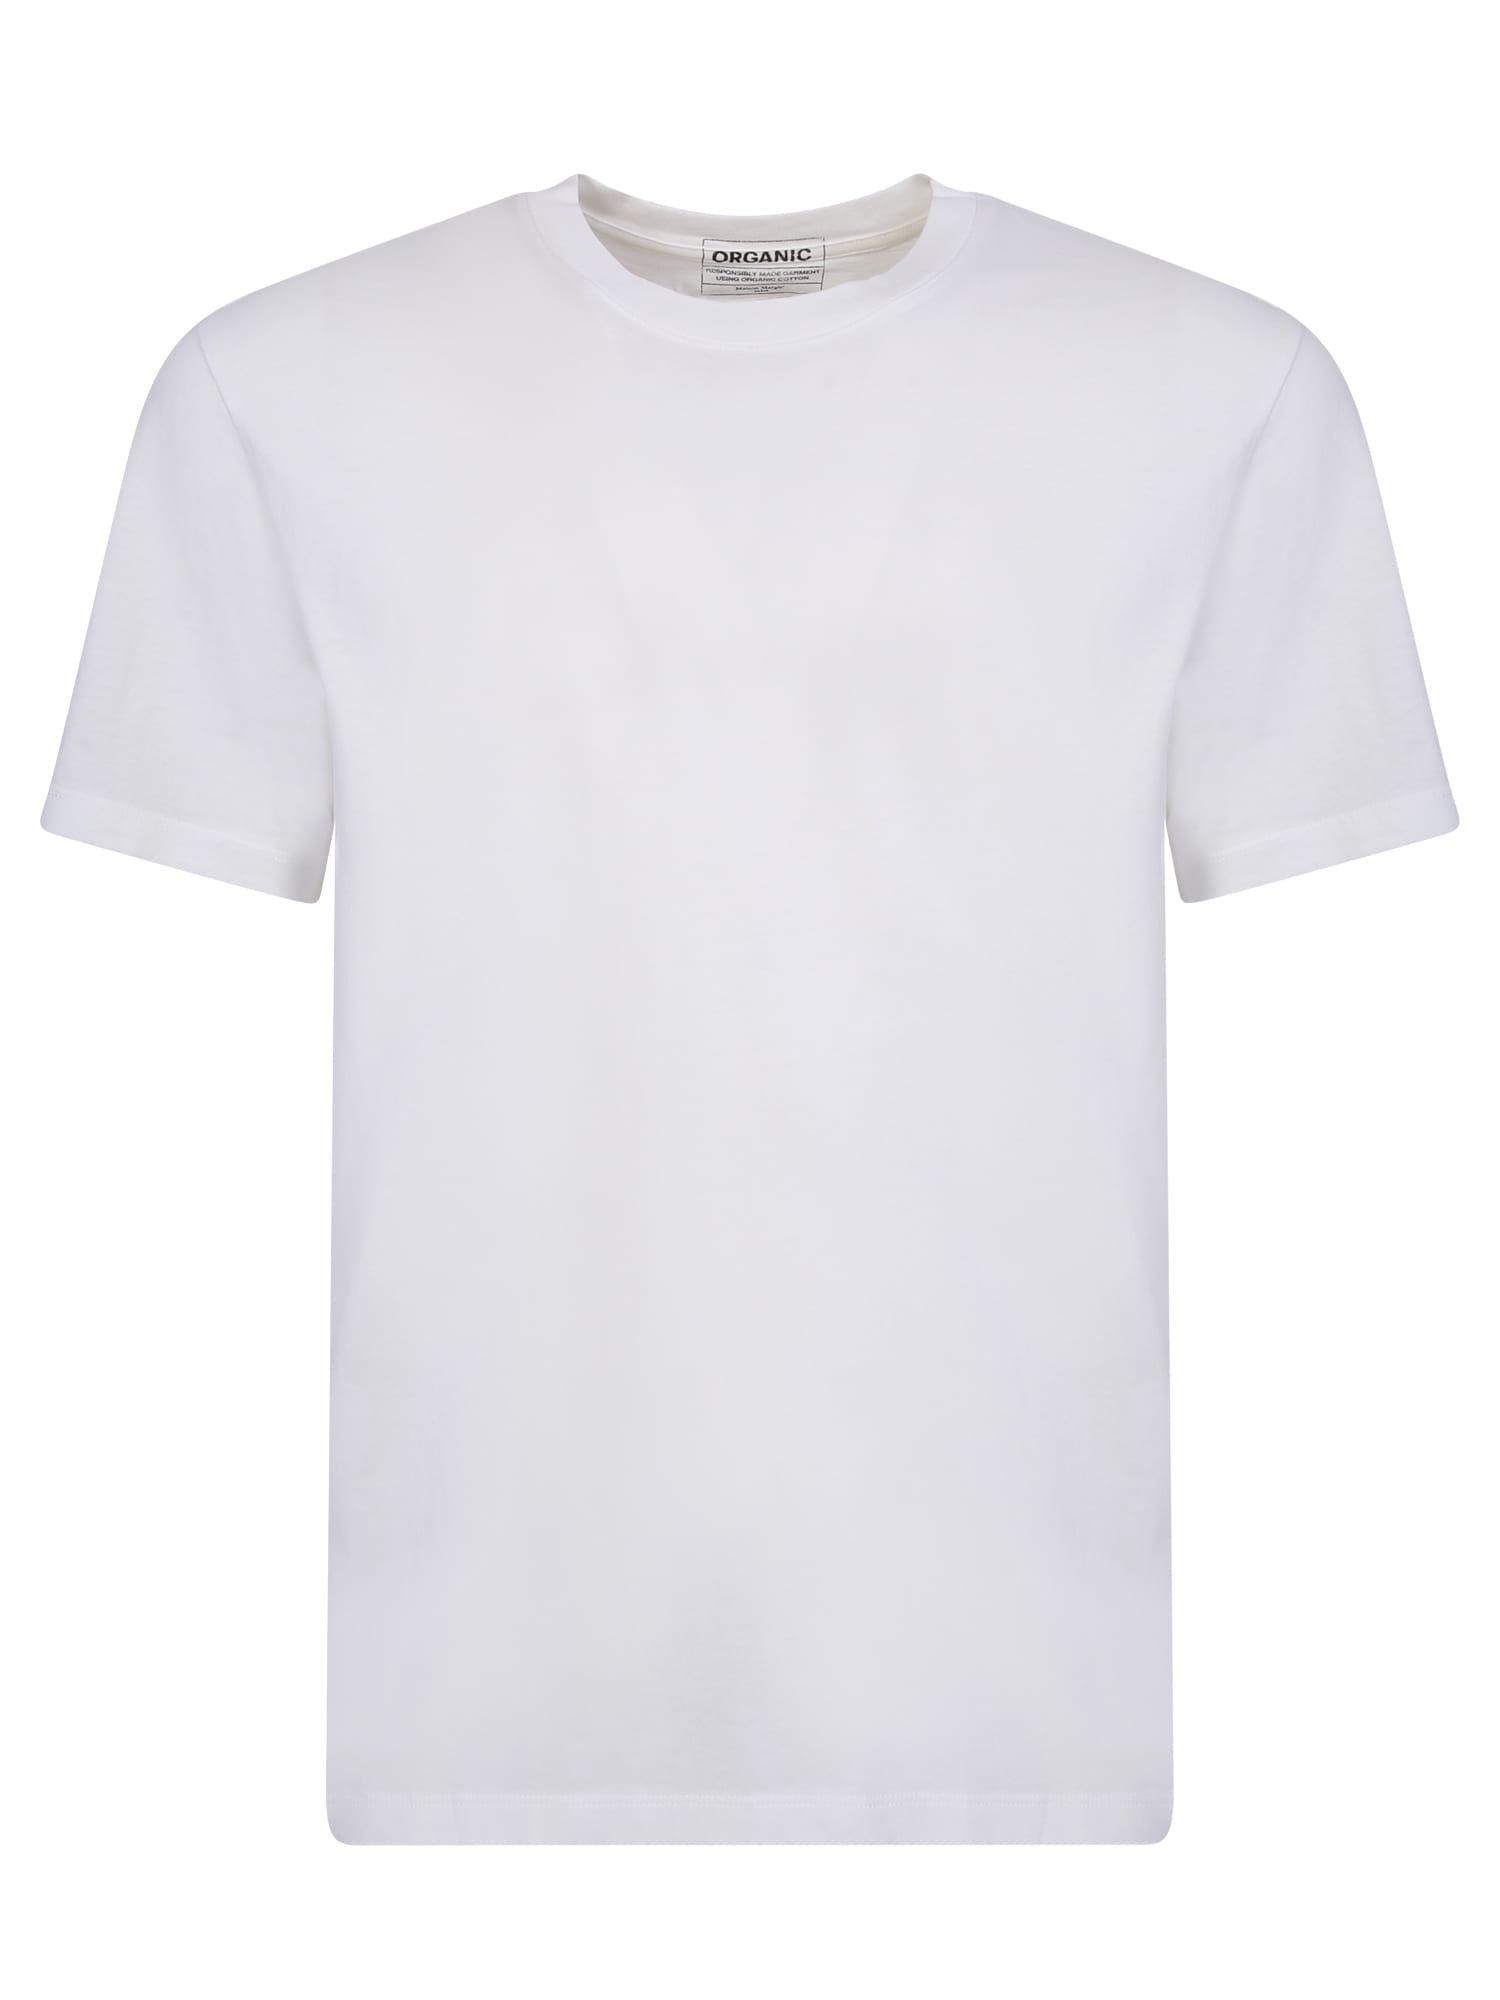 Shop Maison Margiela Basic White T-shirt